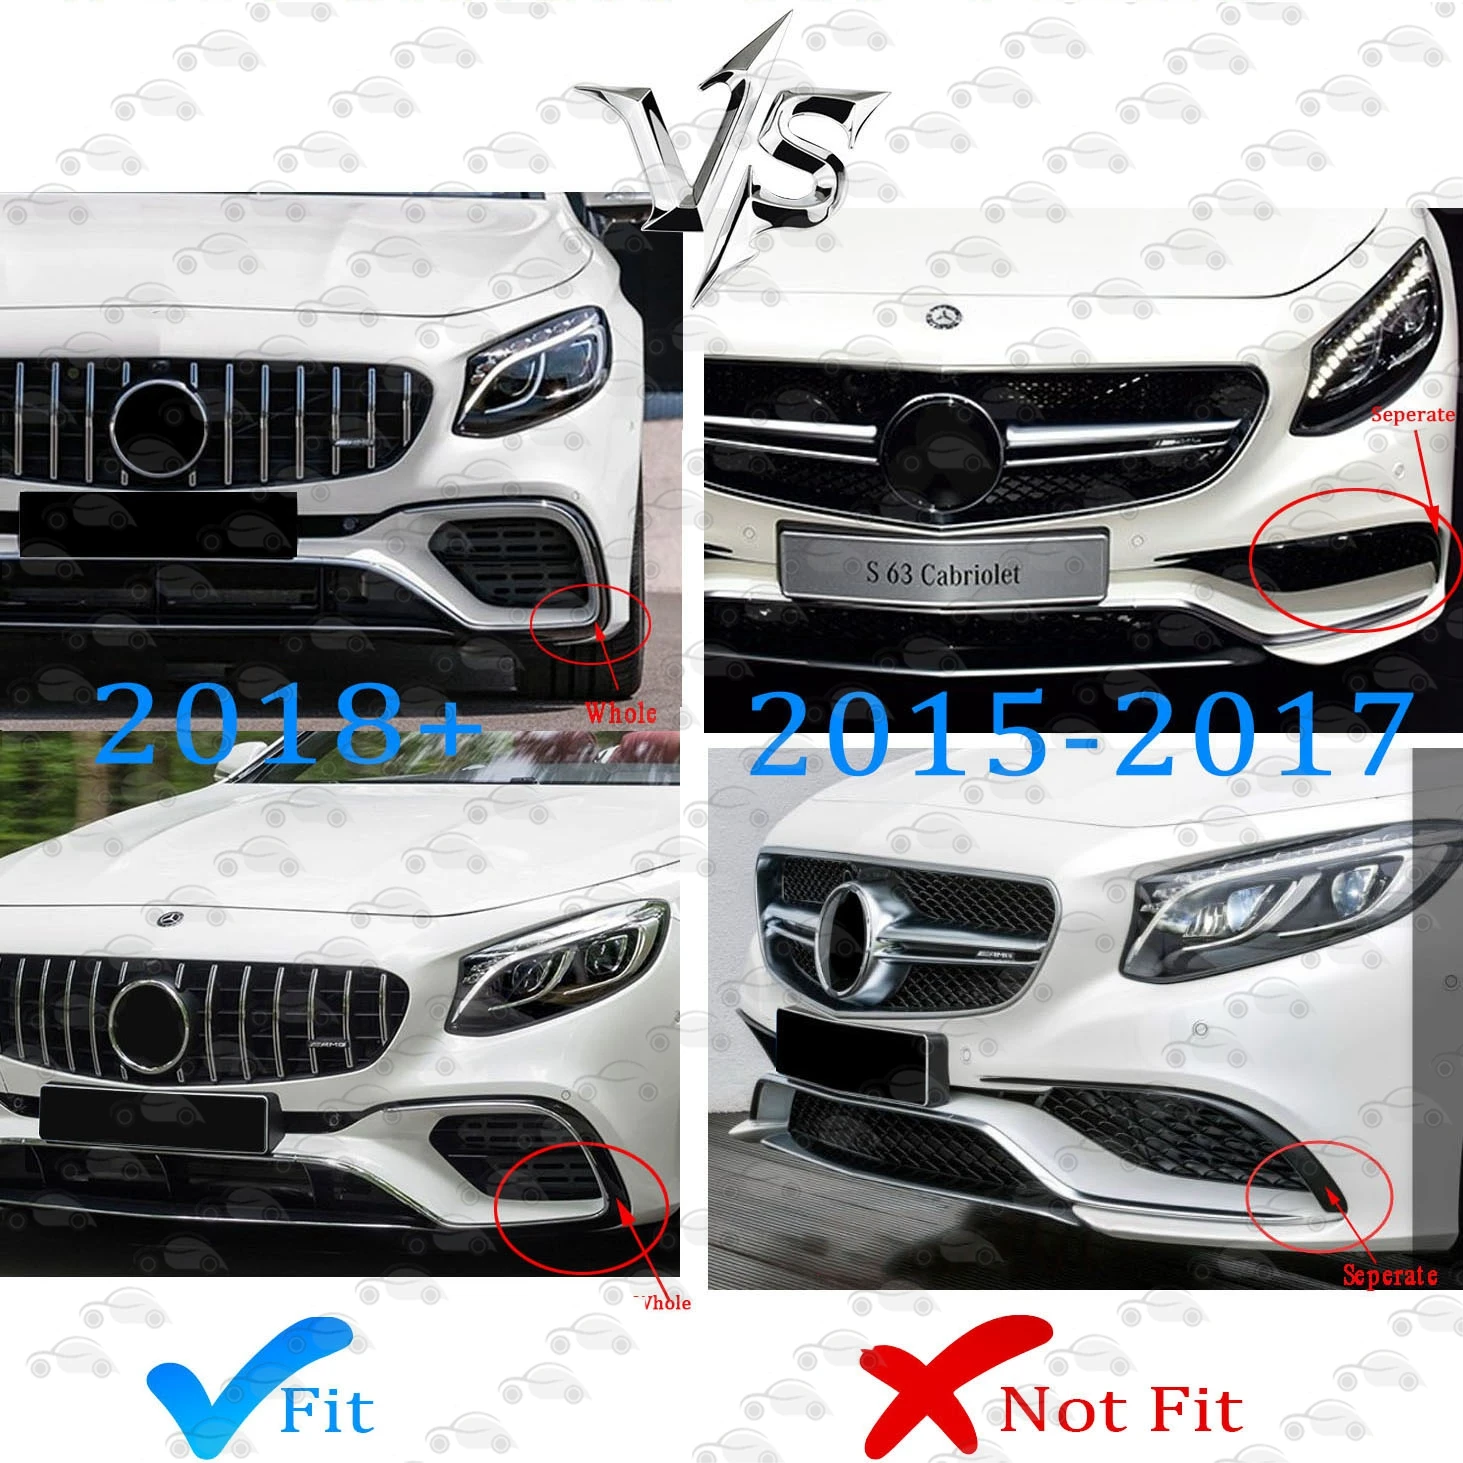 Frente a las Carreras de Parachoques Rejillas Superior de estiramiento facial de la Parrilla Para el Mercedes-Benz W217 S63 AMG Coupe 2018 2019 2020 2021 2022 . ' - ' . 1